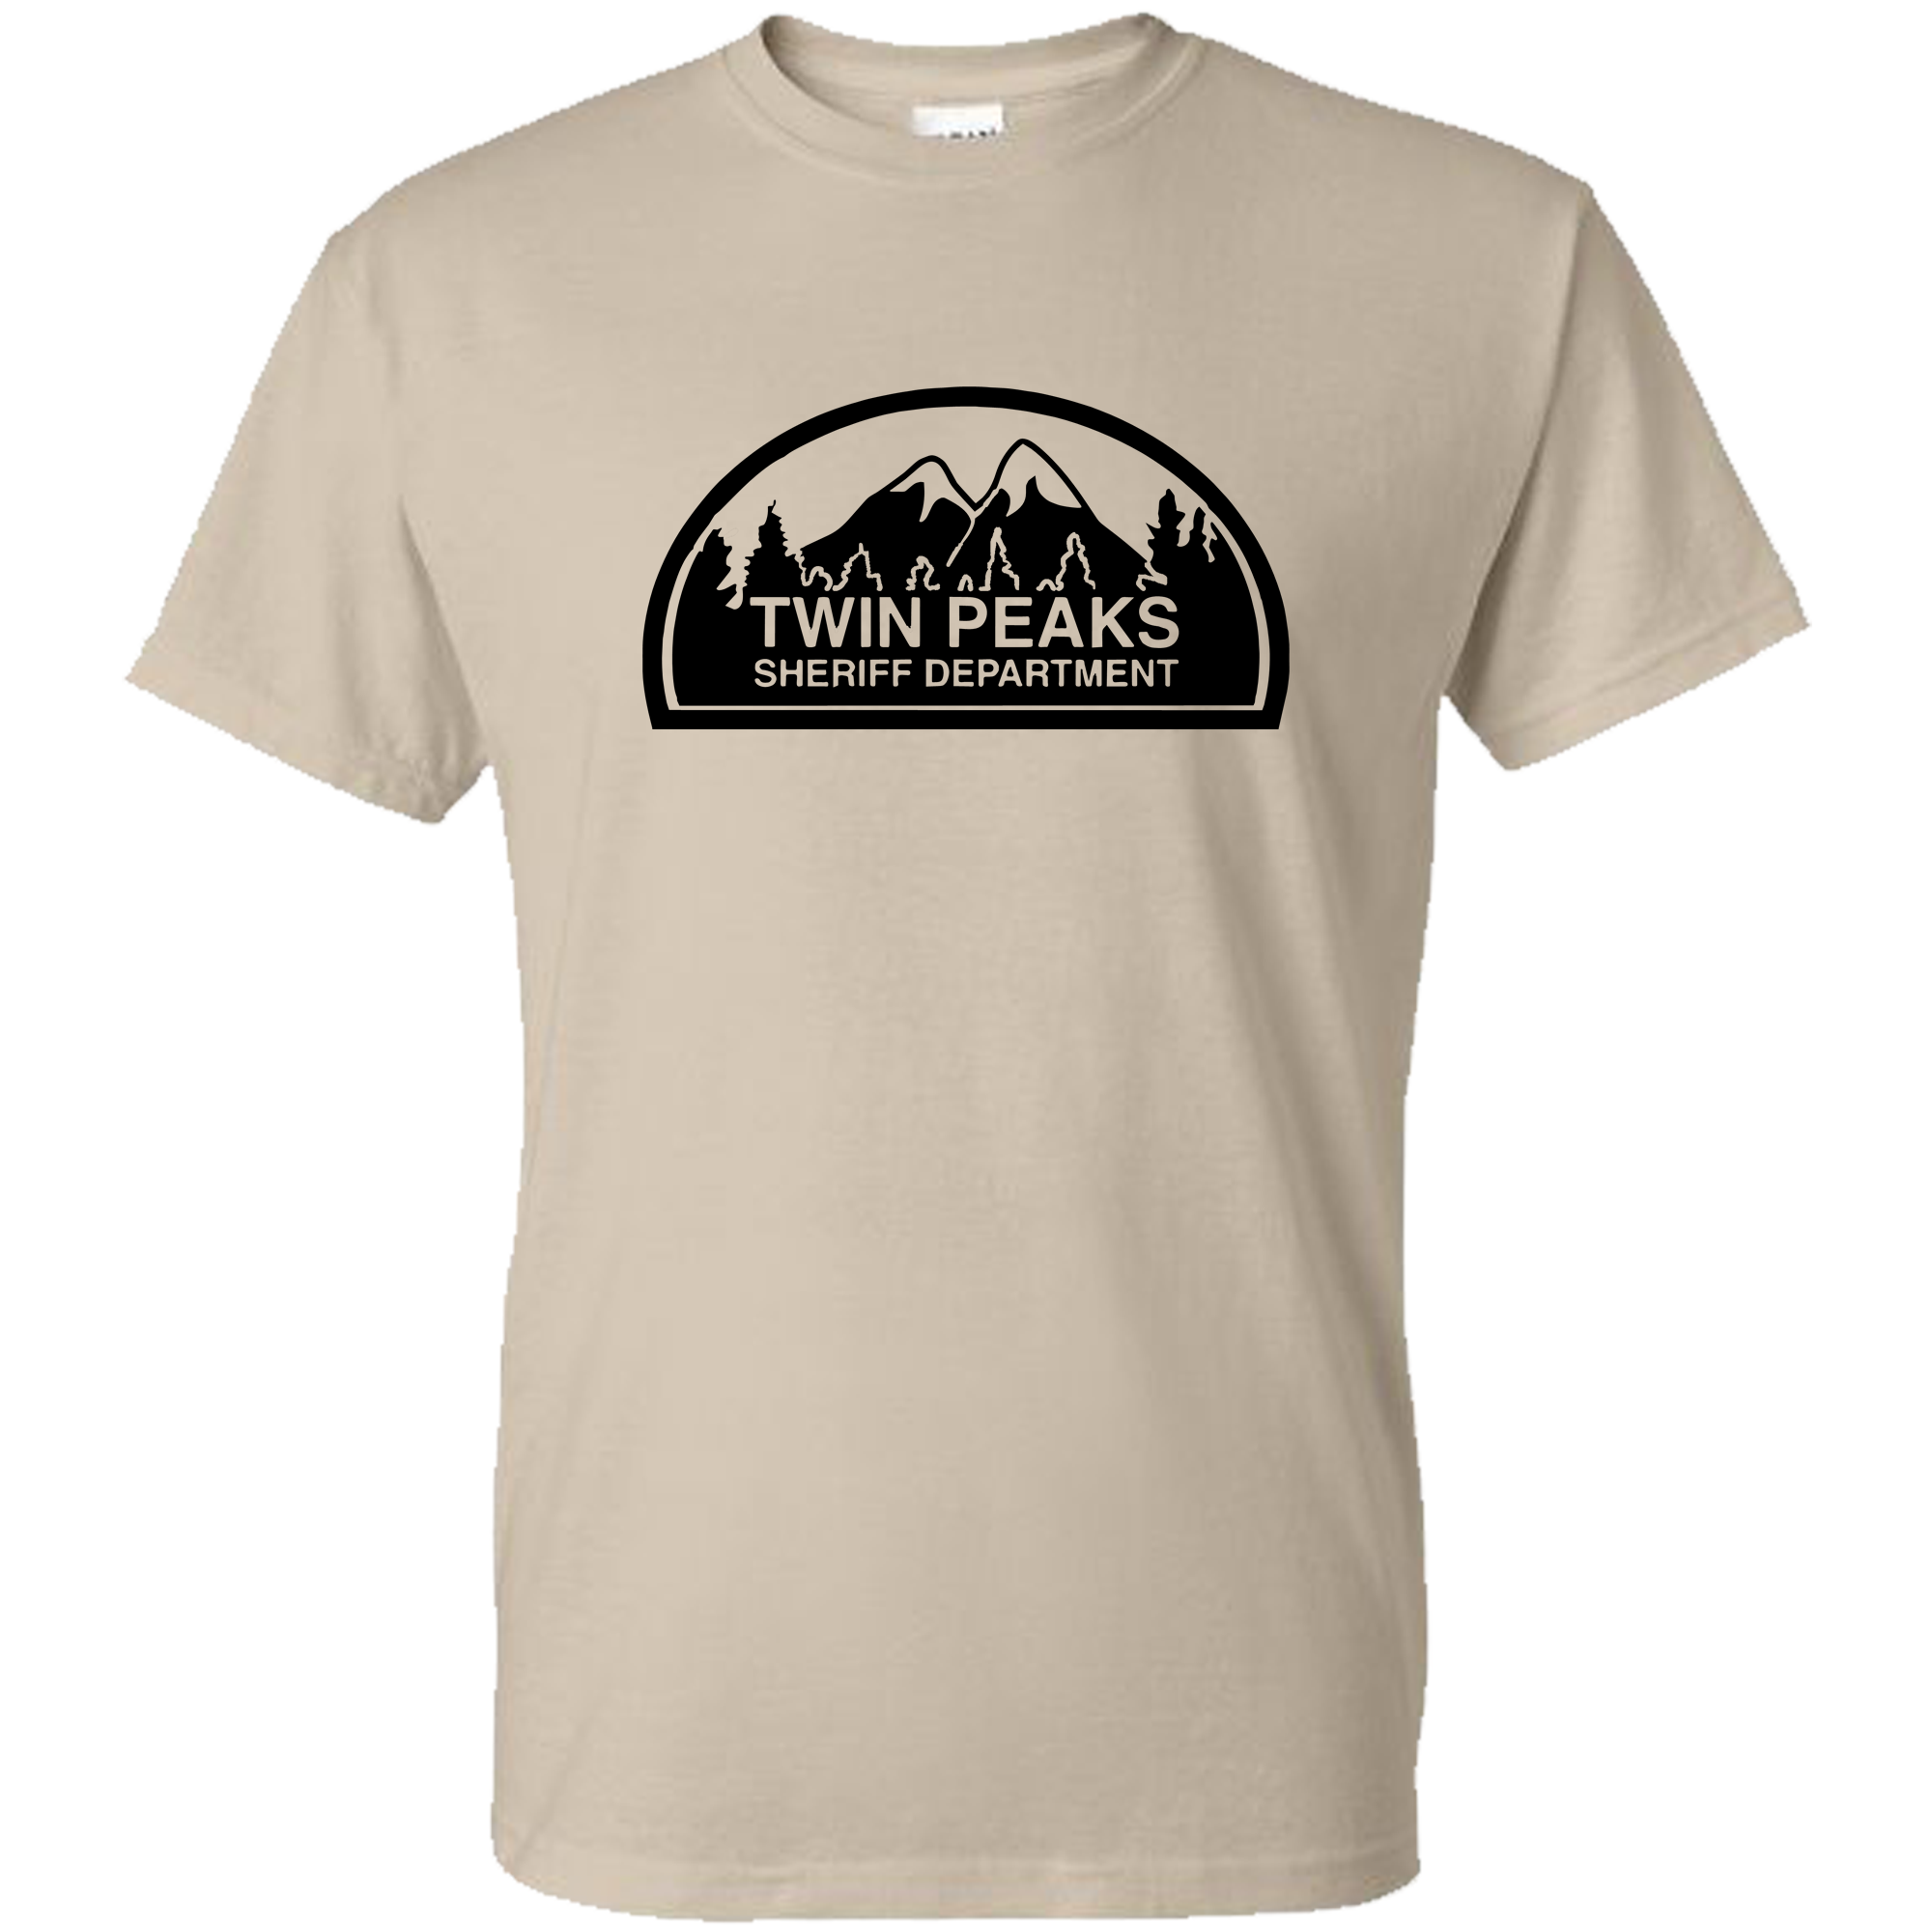 Twin Peaks Shirt, Twin Peaks T-Shirt, Twin Peaks Show Shirt, Twin Peaks Tee Shirt